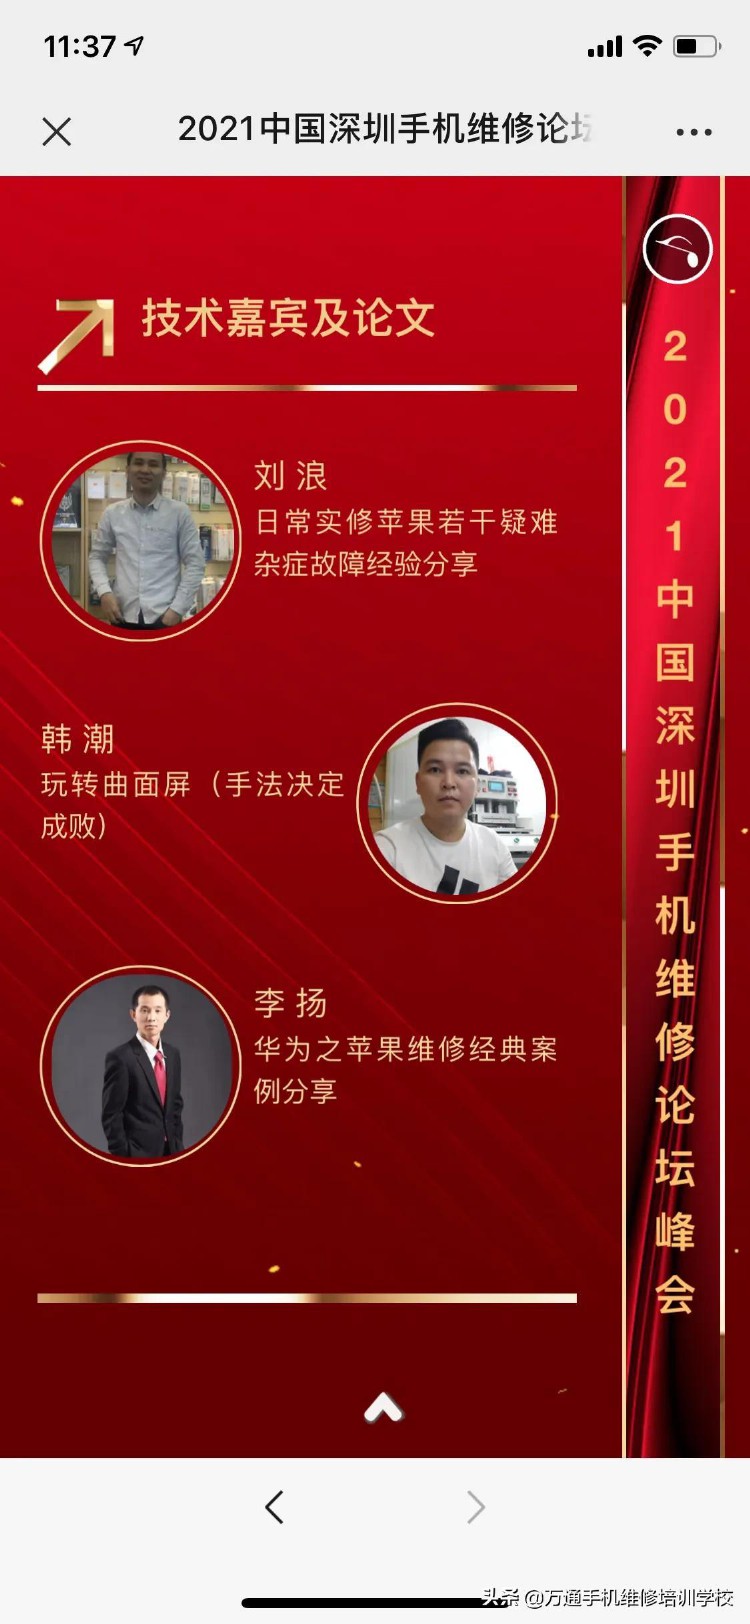 2021中国深圳手机维修论坛峰会